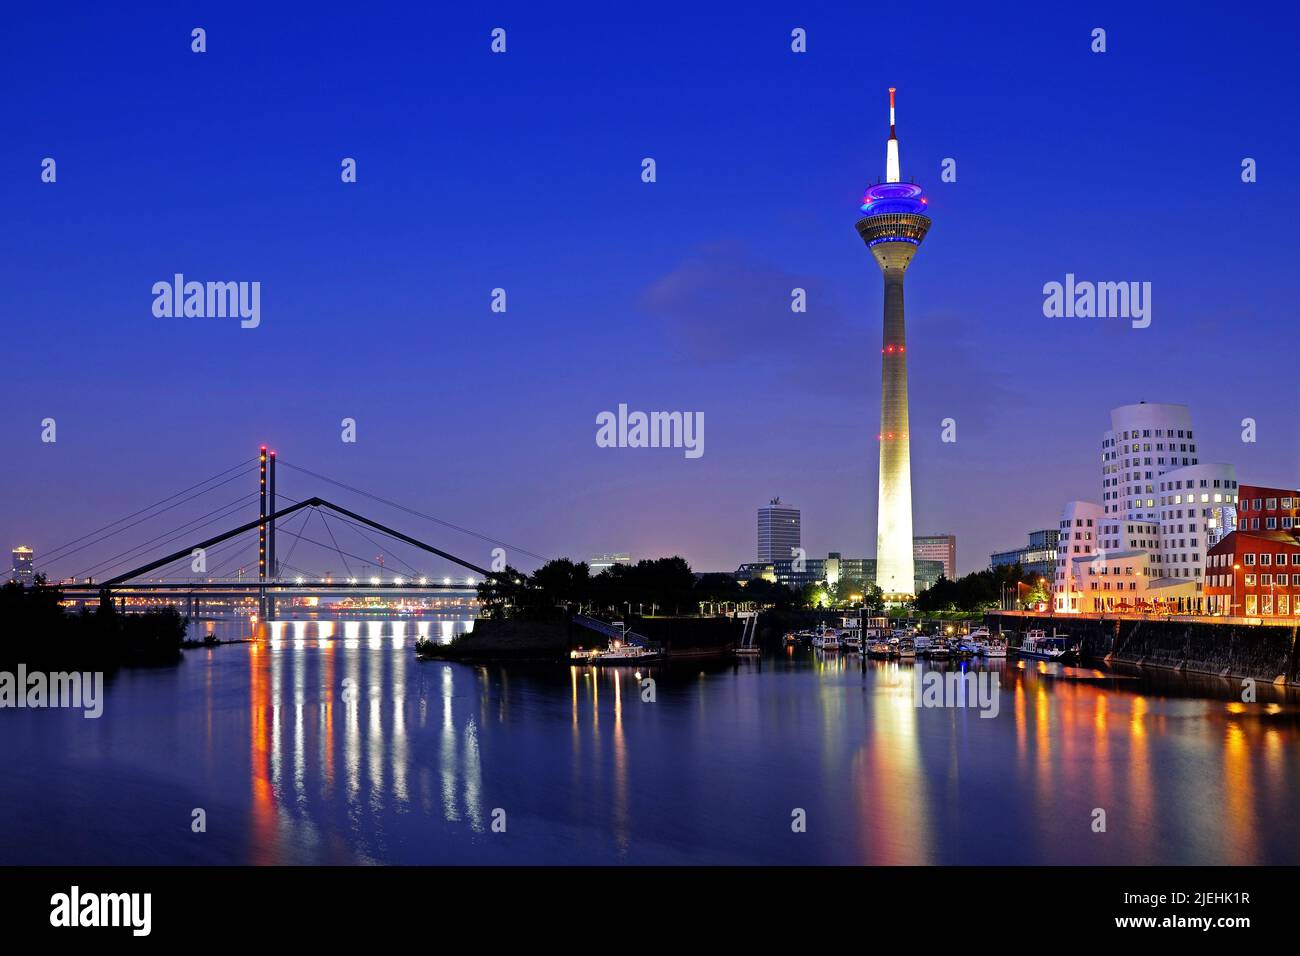 Rheinturm, Gehry-Gebäude, Neuer Zollhof, Medienhafen, Dämmerung, blaue Stunde, Düsseldorf, Nordrhein-Westfalen, Deutschland, Rheinbrücke, Stock Photo